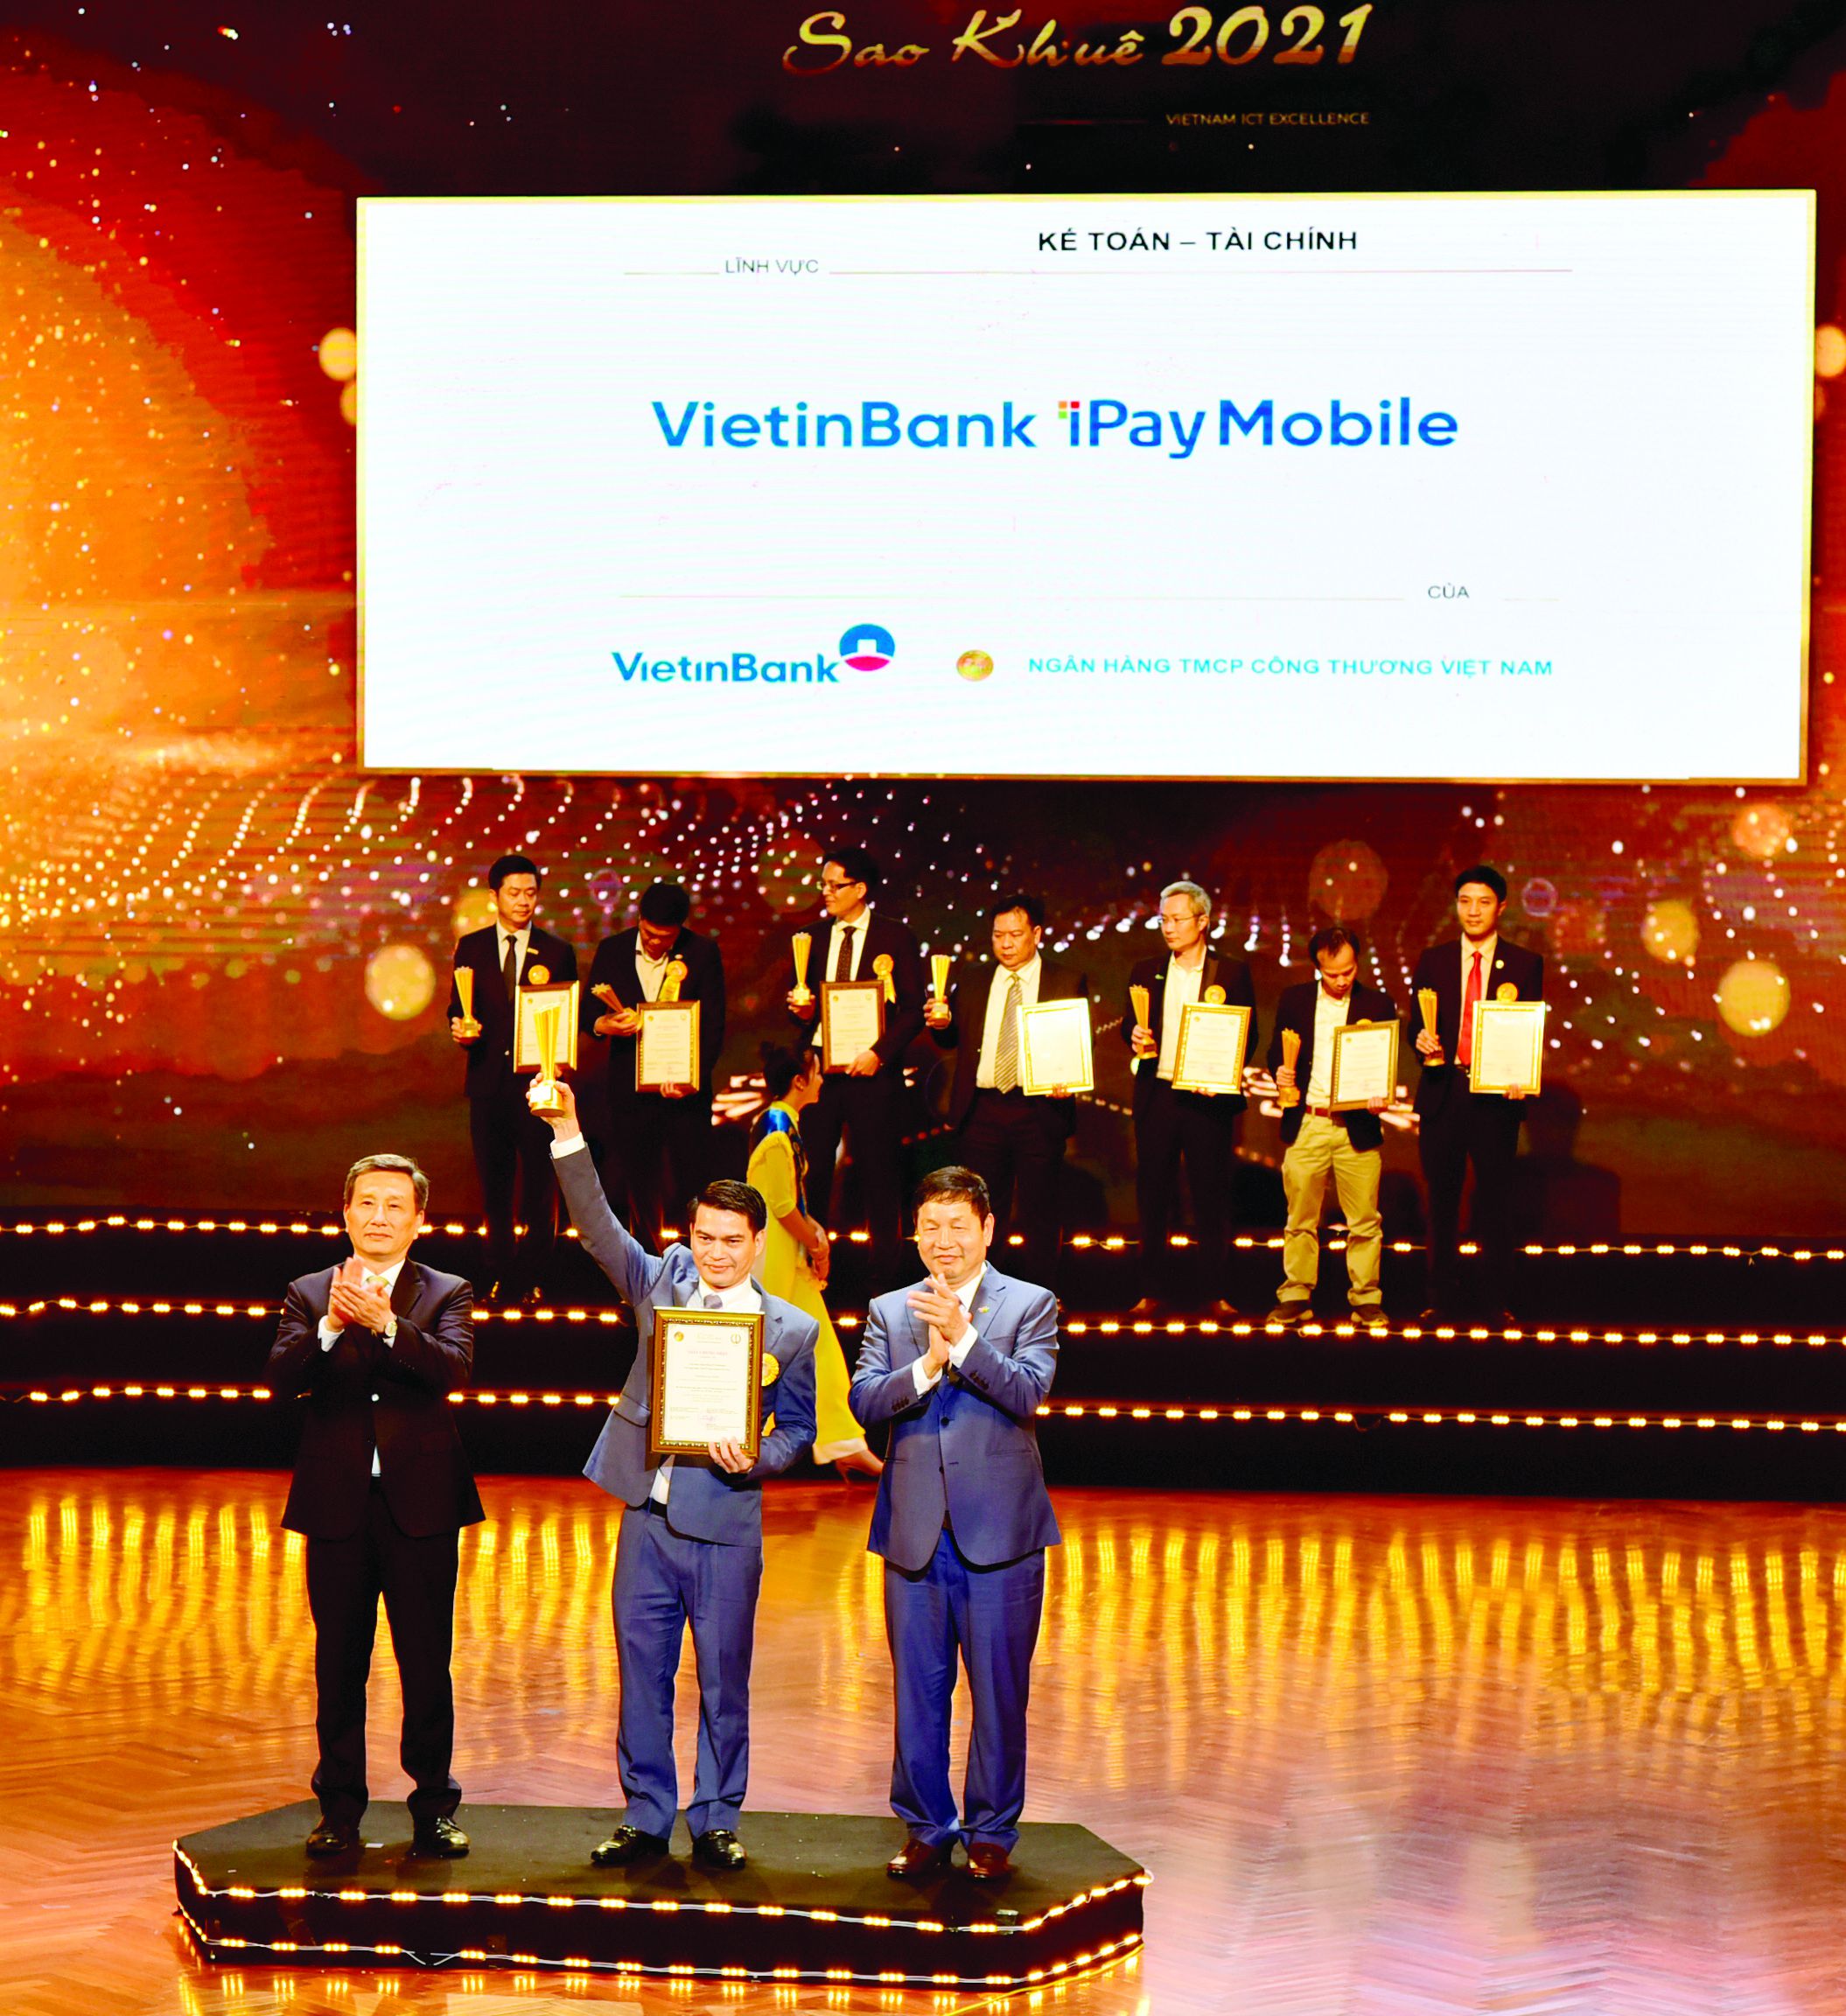  Ông Đàm Hồng Tiến - Giám đốc Khối Bán lẻ VietinBank đại diện nhận Giải thưởng Sao Khuê năm 2021 cho Ứng dụng Ngân hàng số VietinBank iPay Mobile